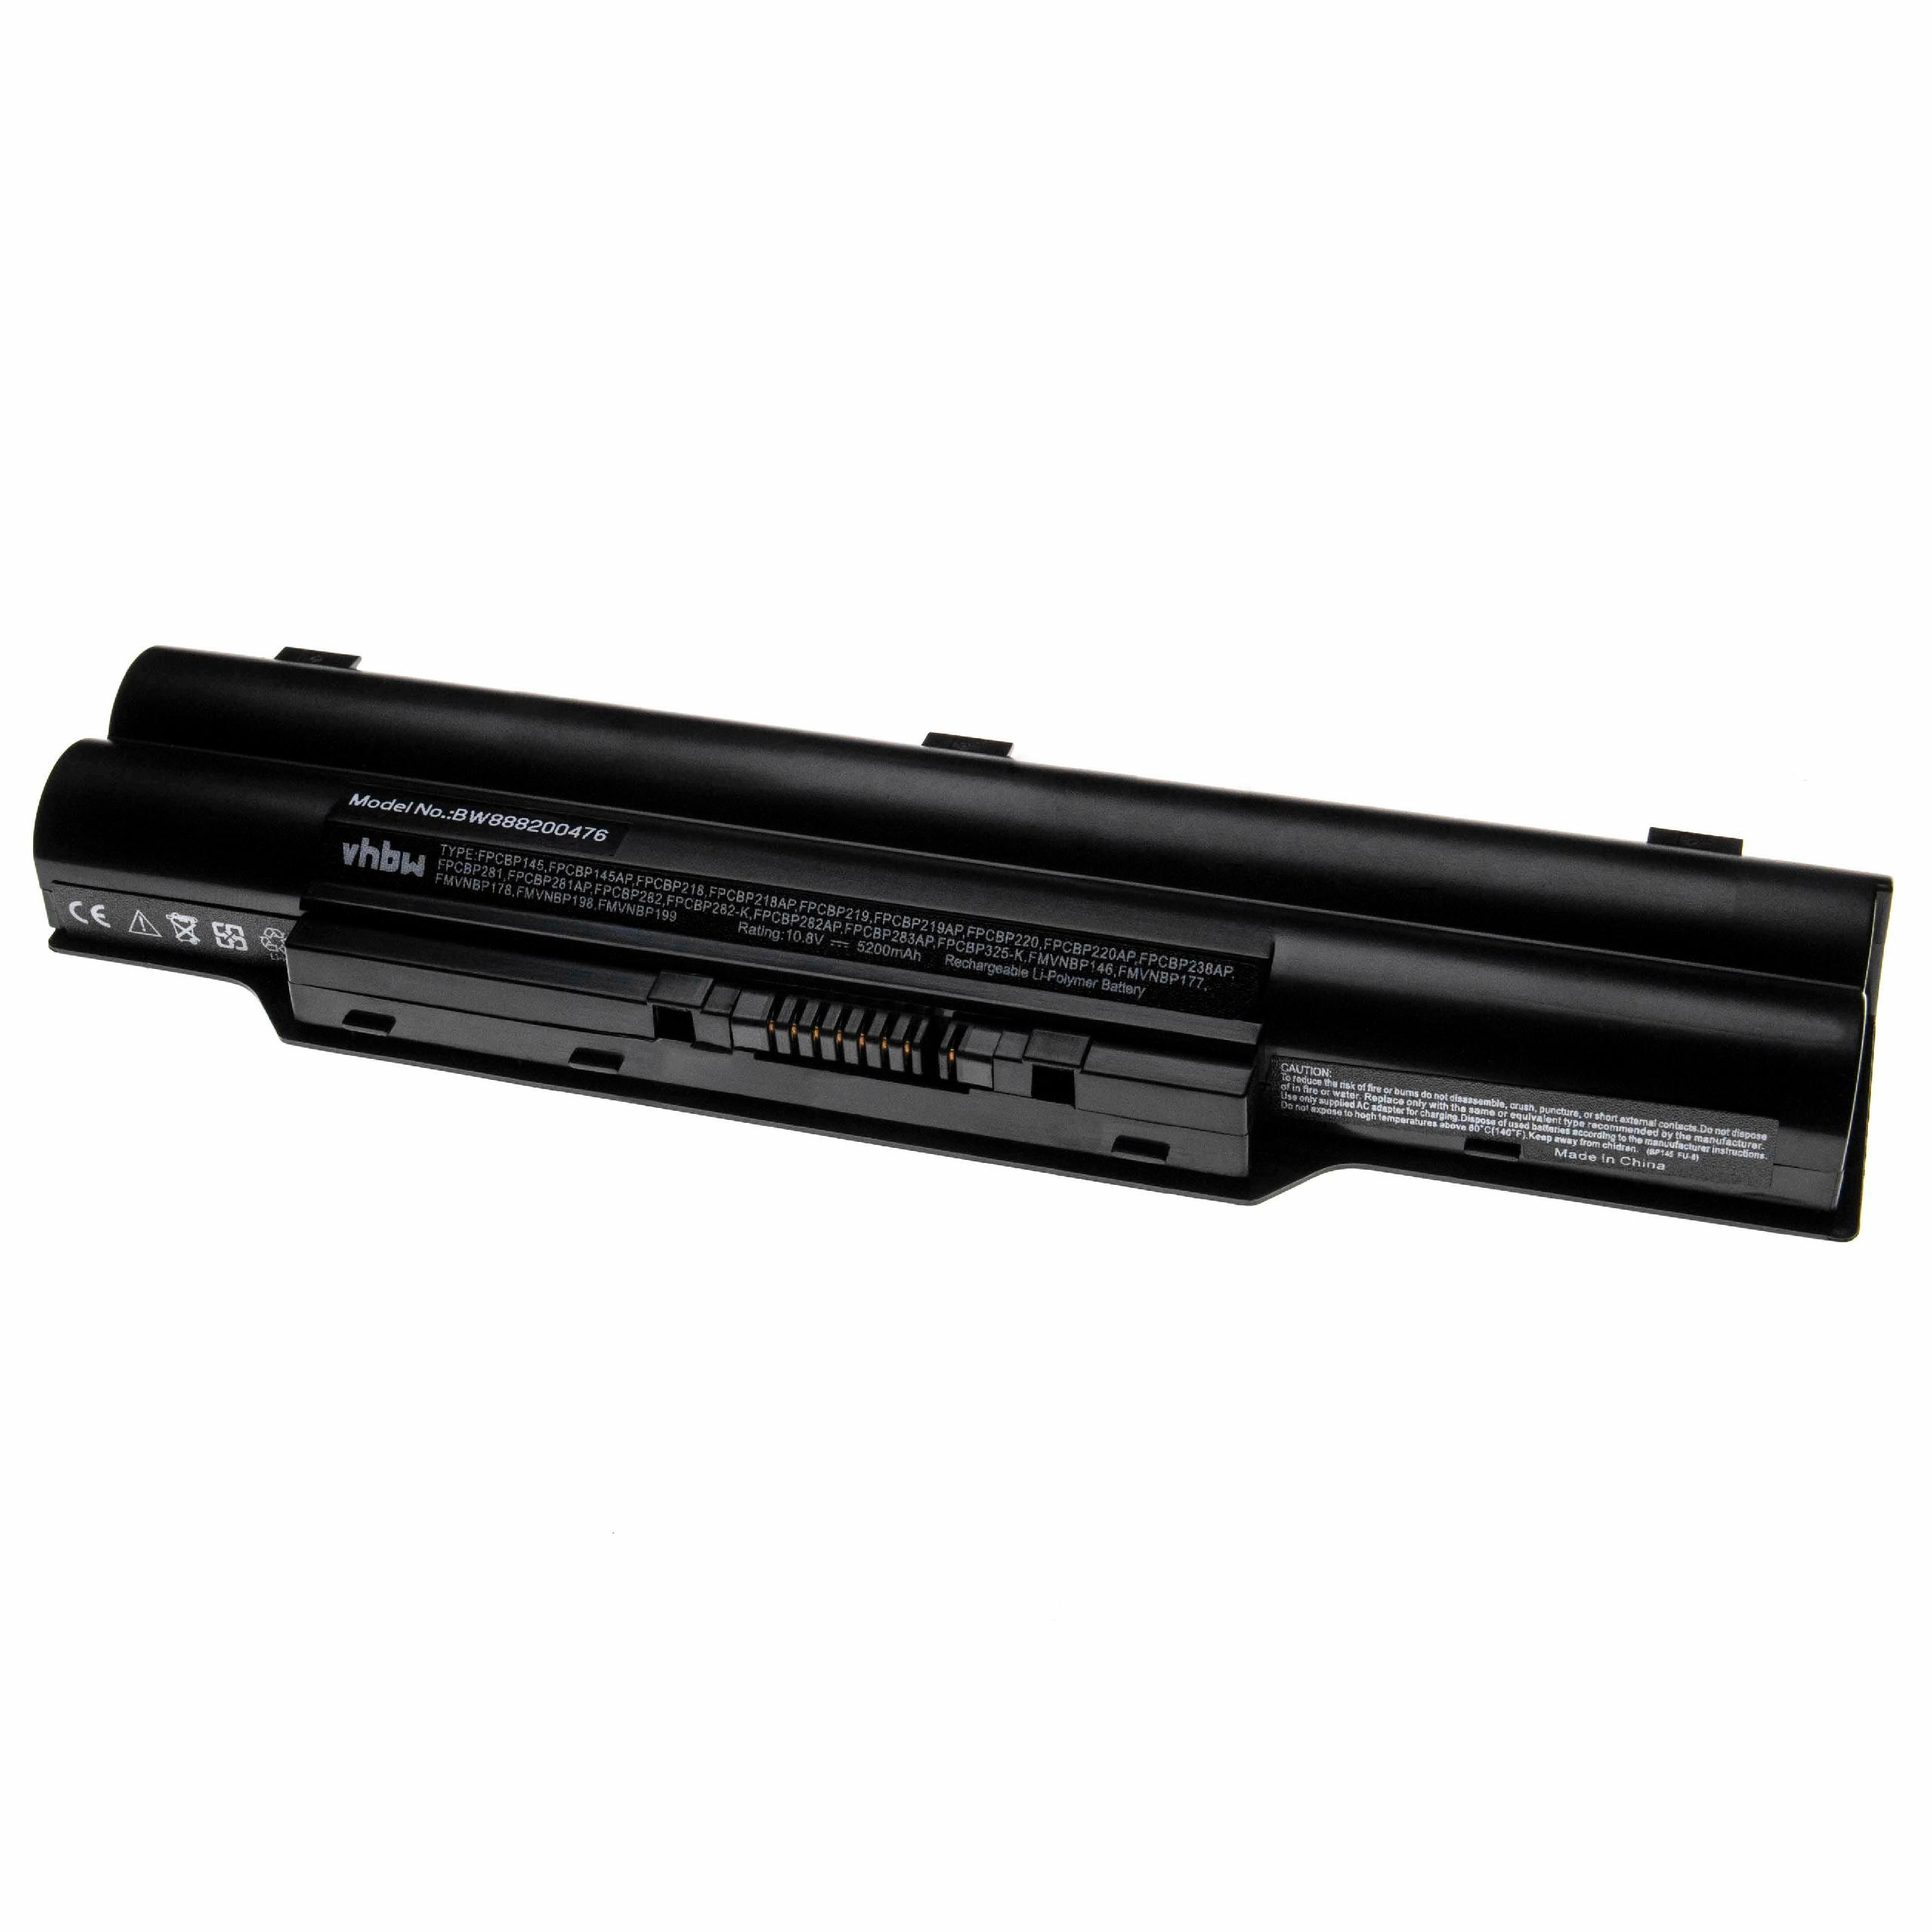 Batterie remplace Fujitsu cp293541-01, CP293550-01 pour ordinateur portable - 5200mAh 10,8V Li-polymère, noir